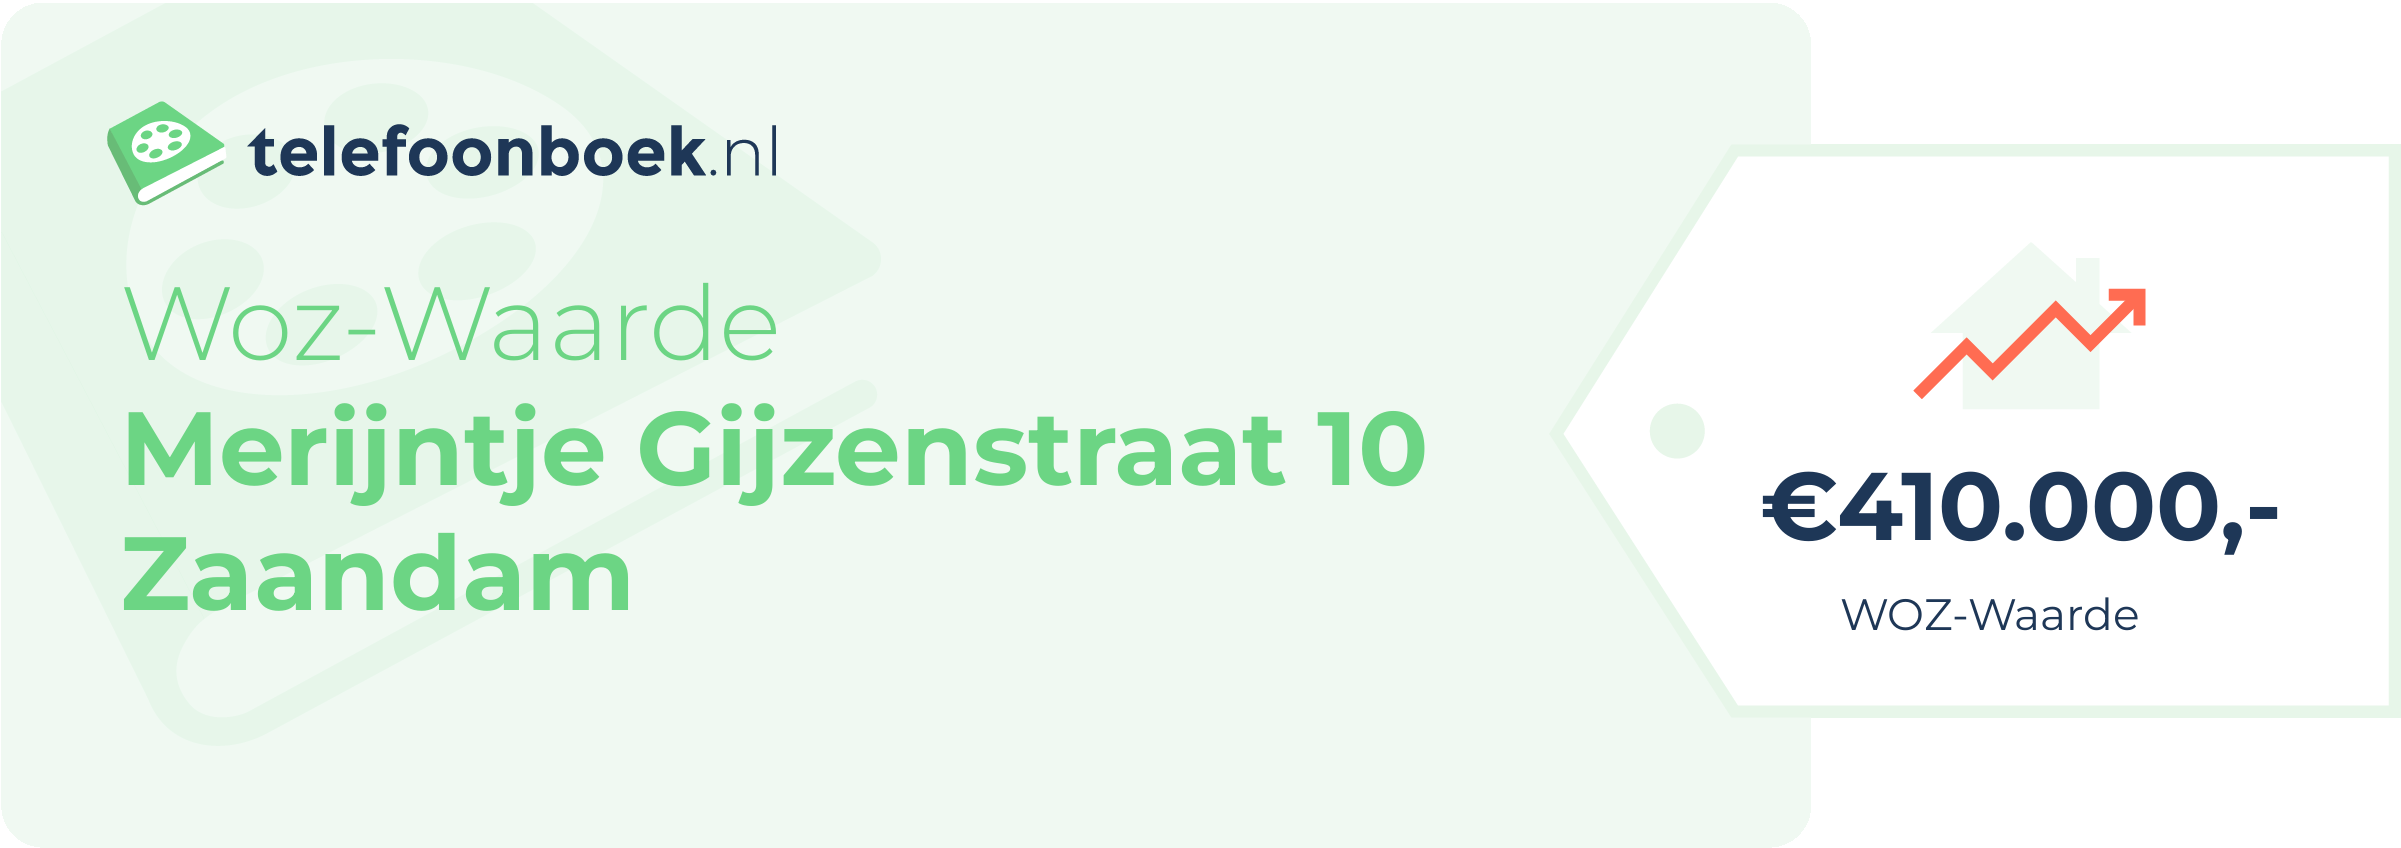 WOZ-waarde Merijntje Gijzenstraat 10 Zaandam